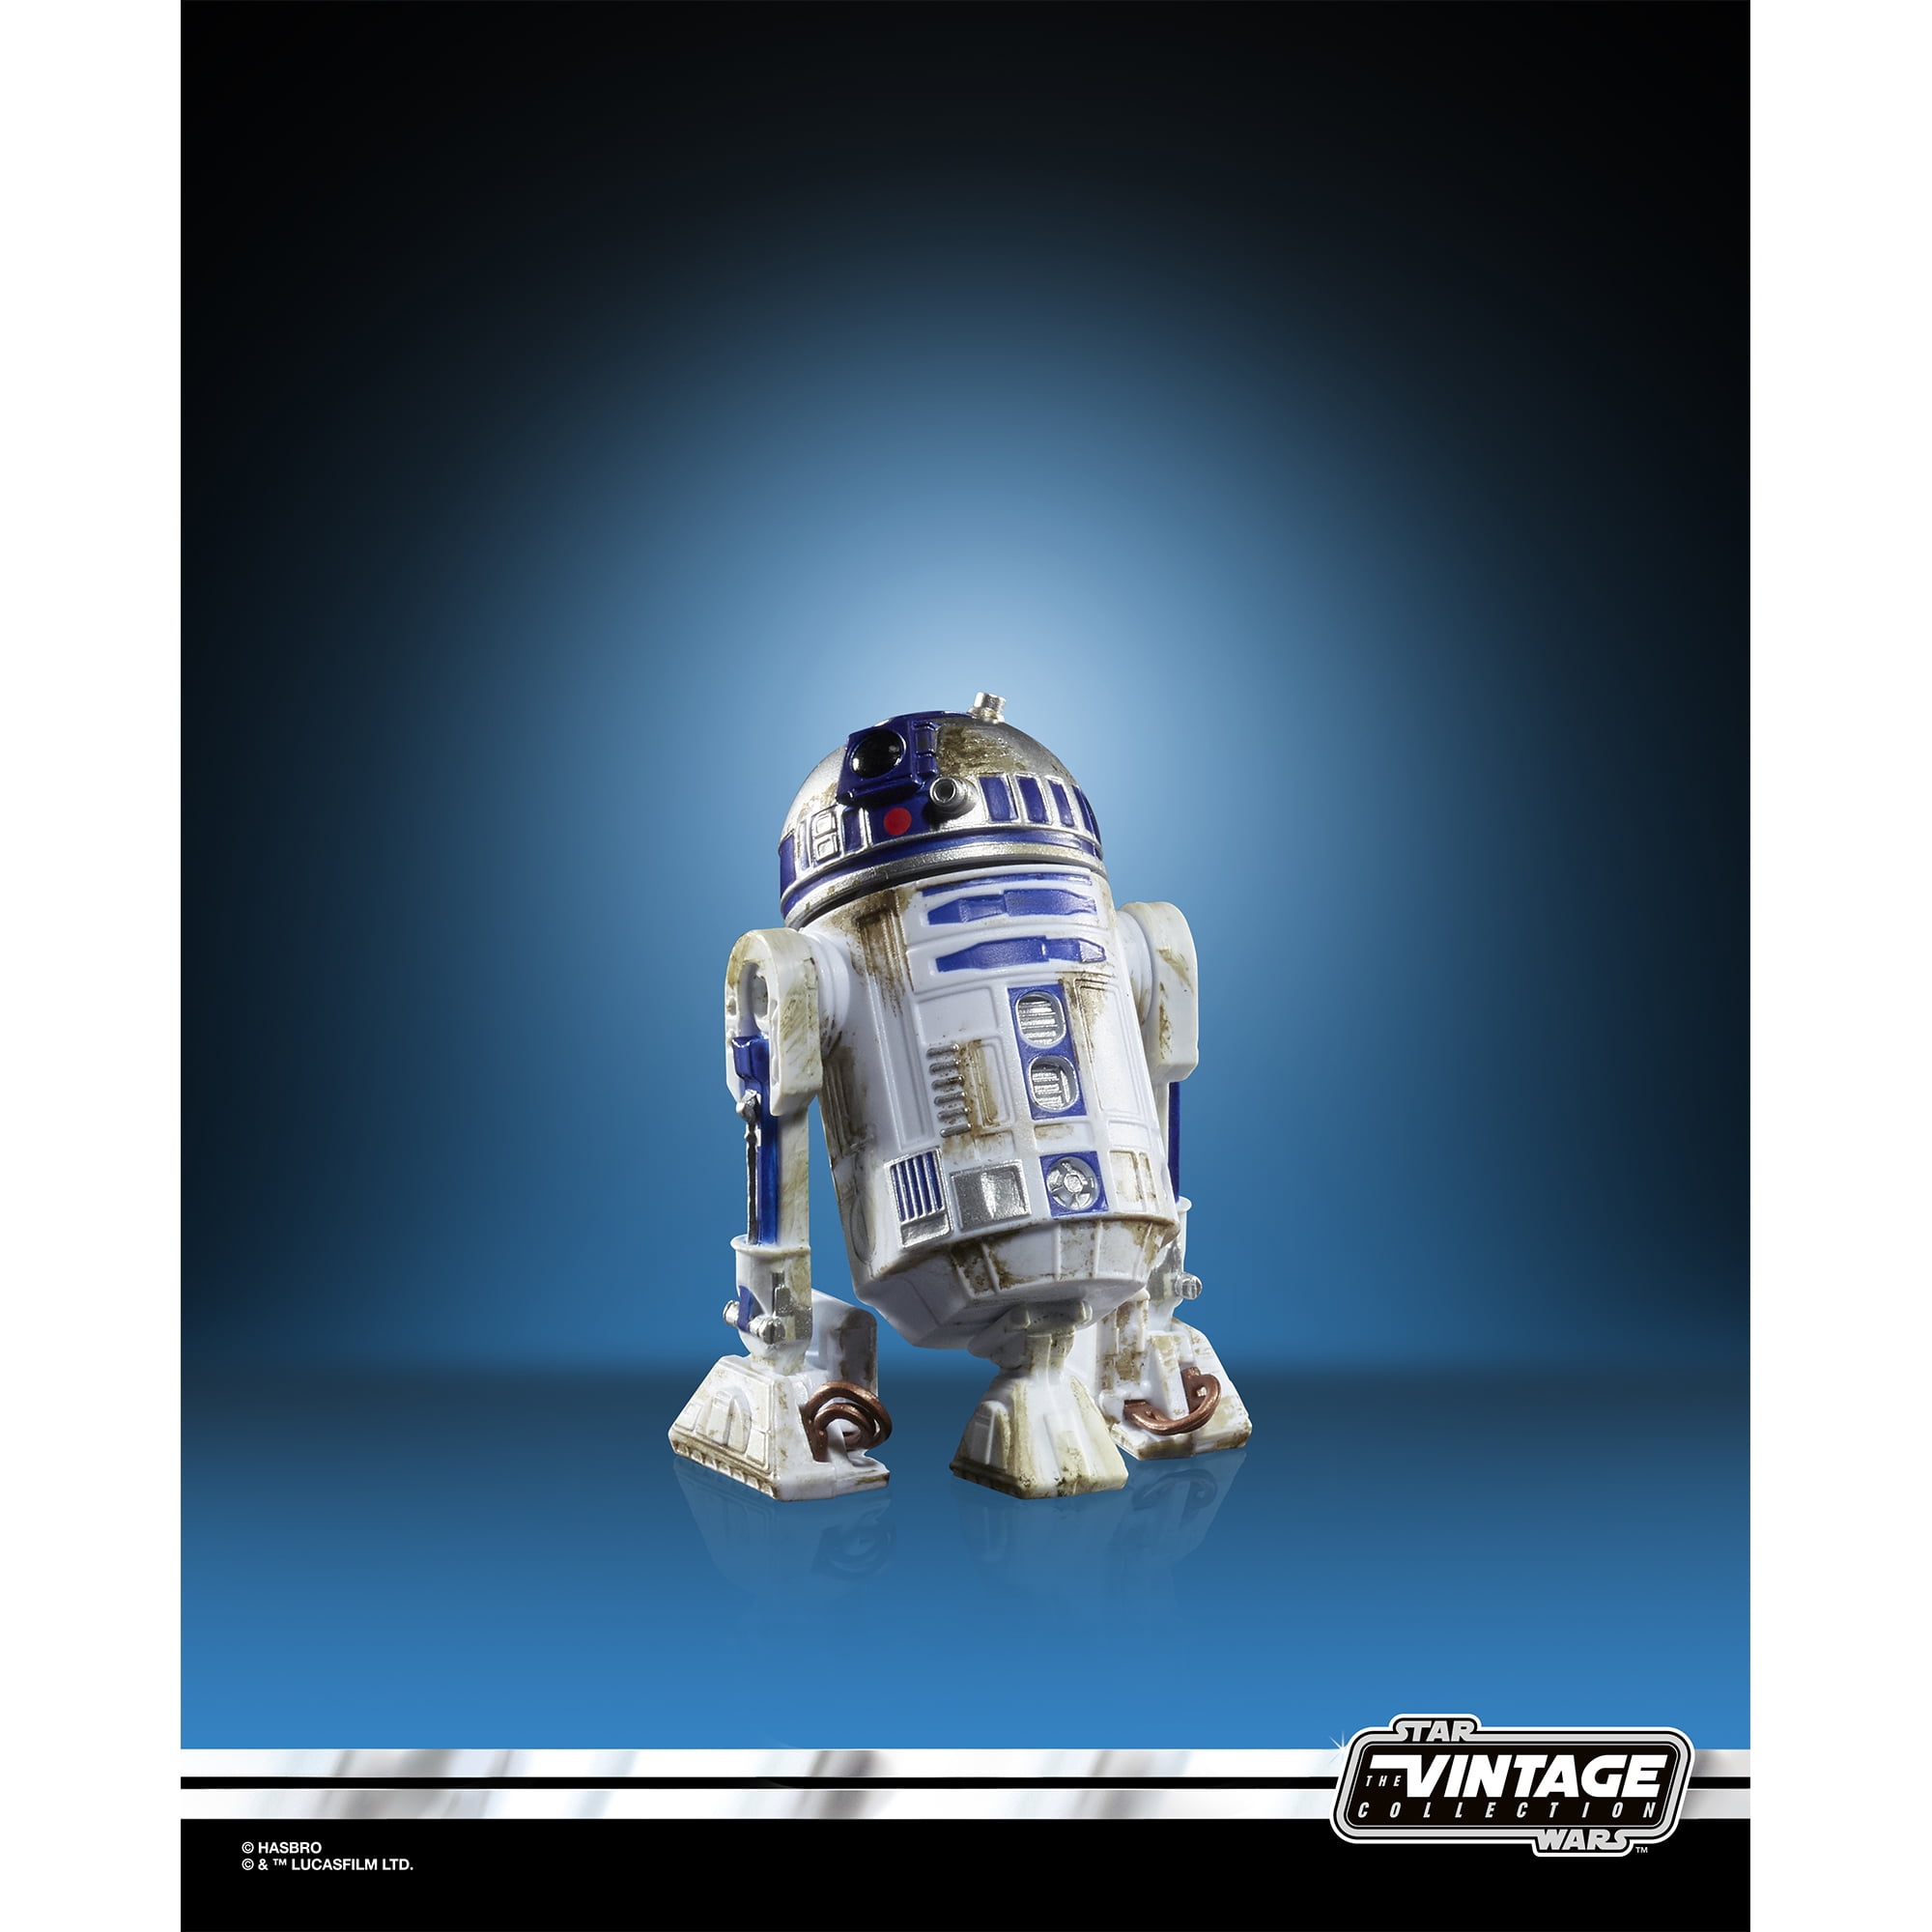 Star Wars Chaveiro e Tag - Pelucia R2-D2 - DTC - Toyshow Tudo de